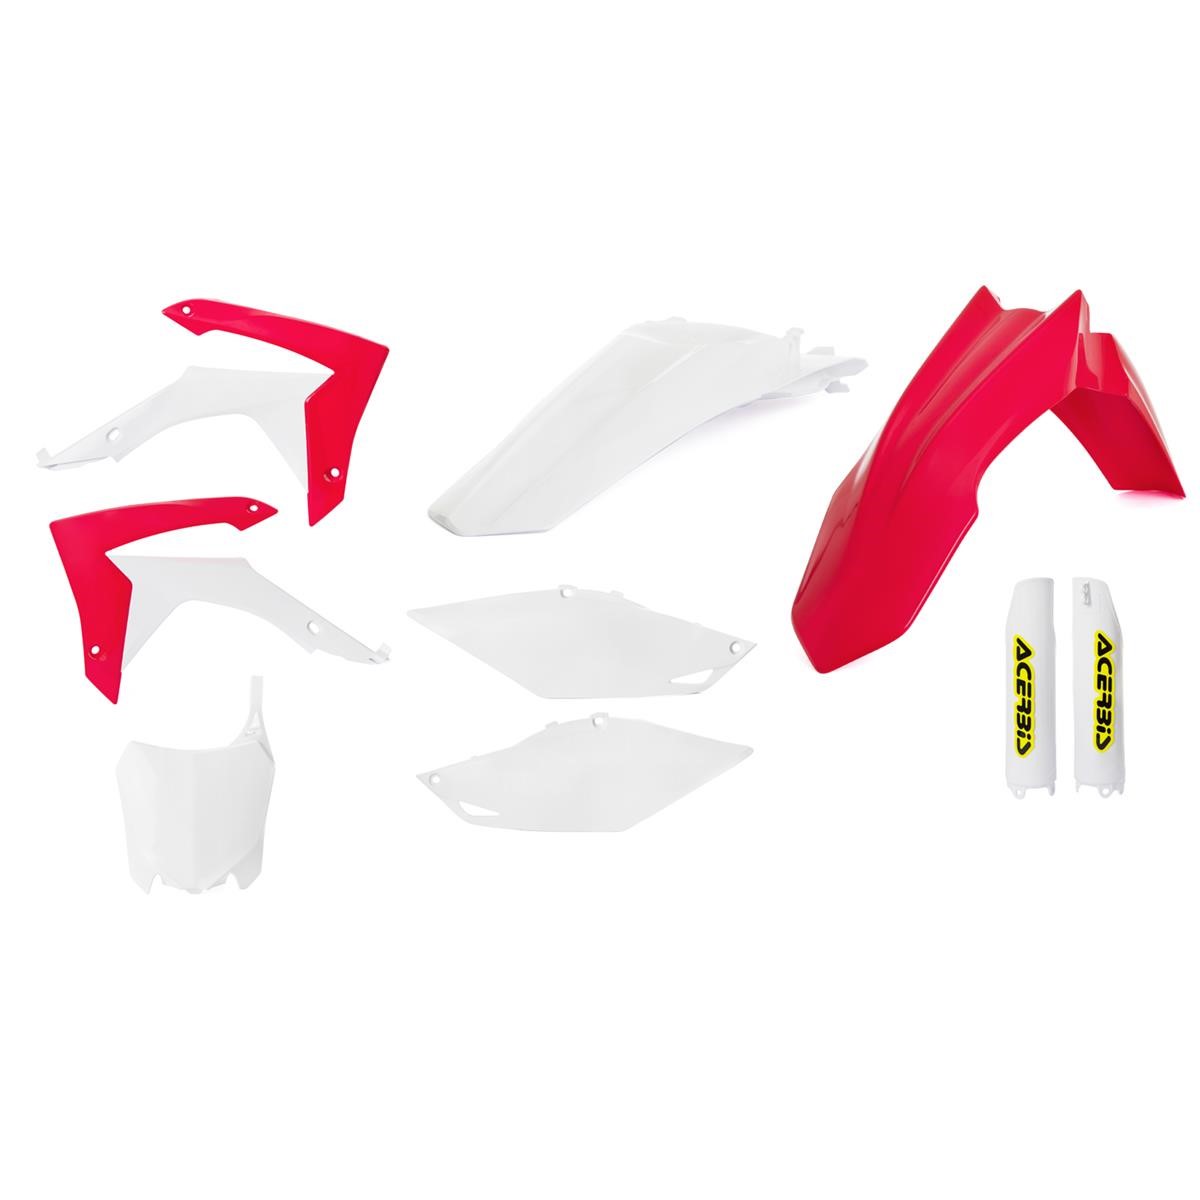 Acerbis Plastic Kit Full-Kit Honda CRF 250 14-17, CRF 450 13-16, Replica